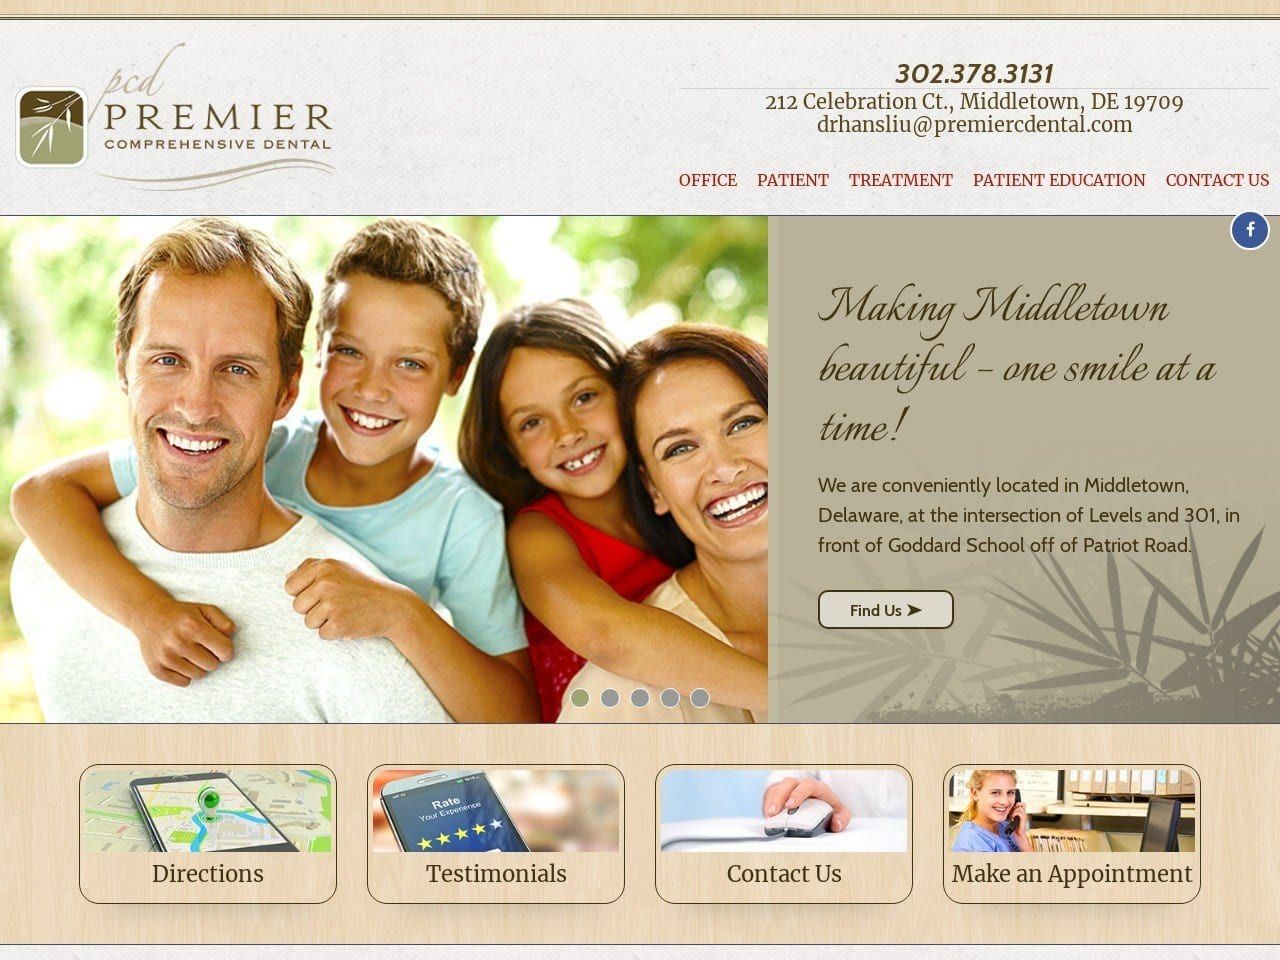 Premier Comprehensive Dental Website Screenshot from premiercdental.com